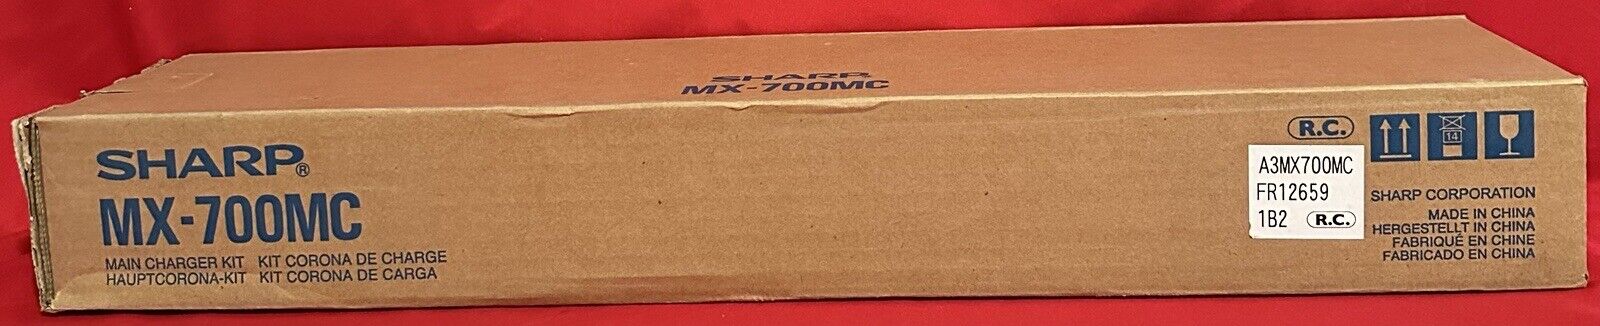 Original Sharp MX-700MC Main Charger Kit